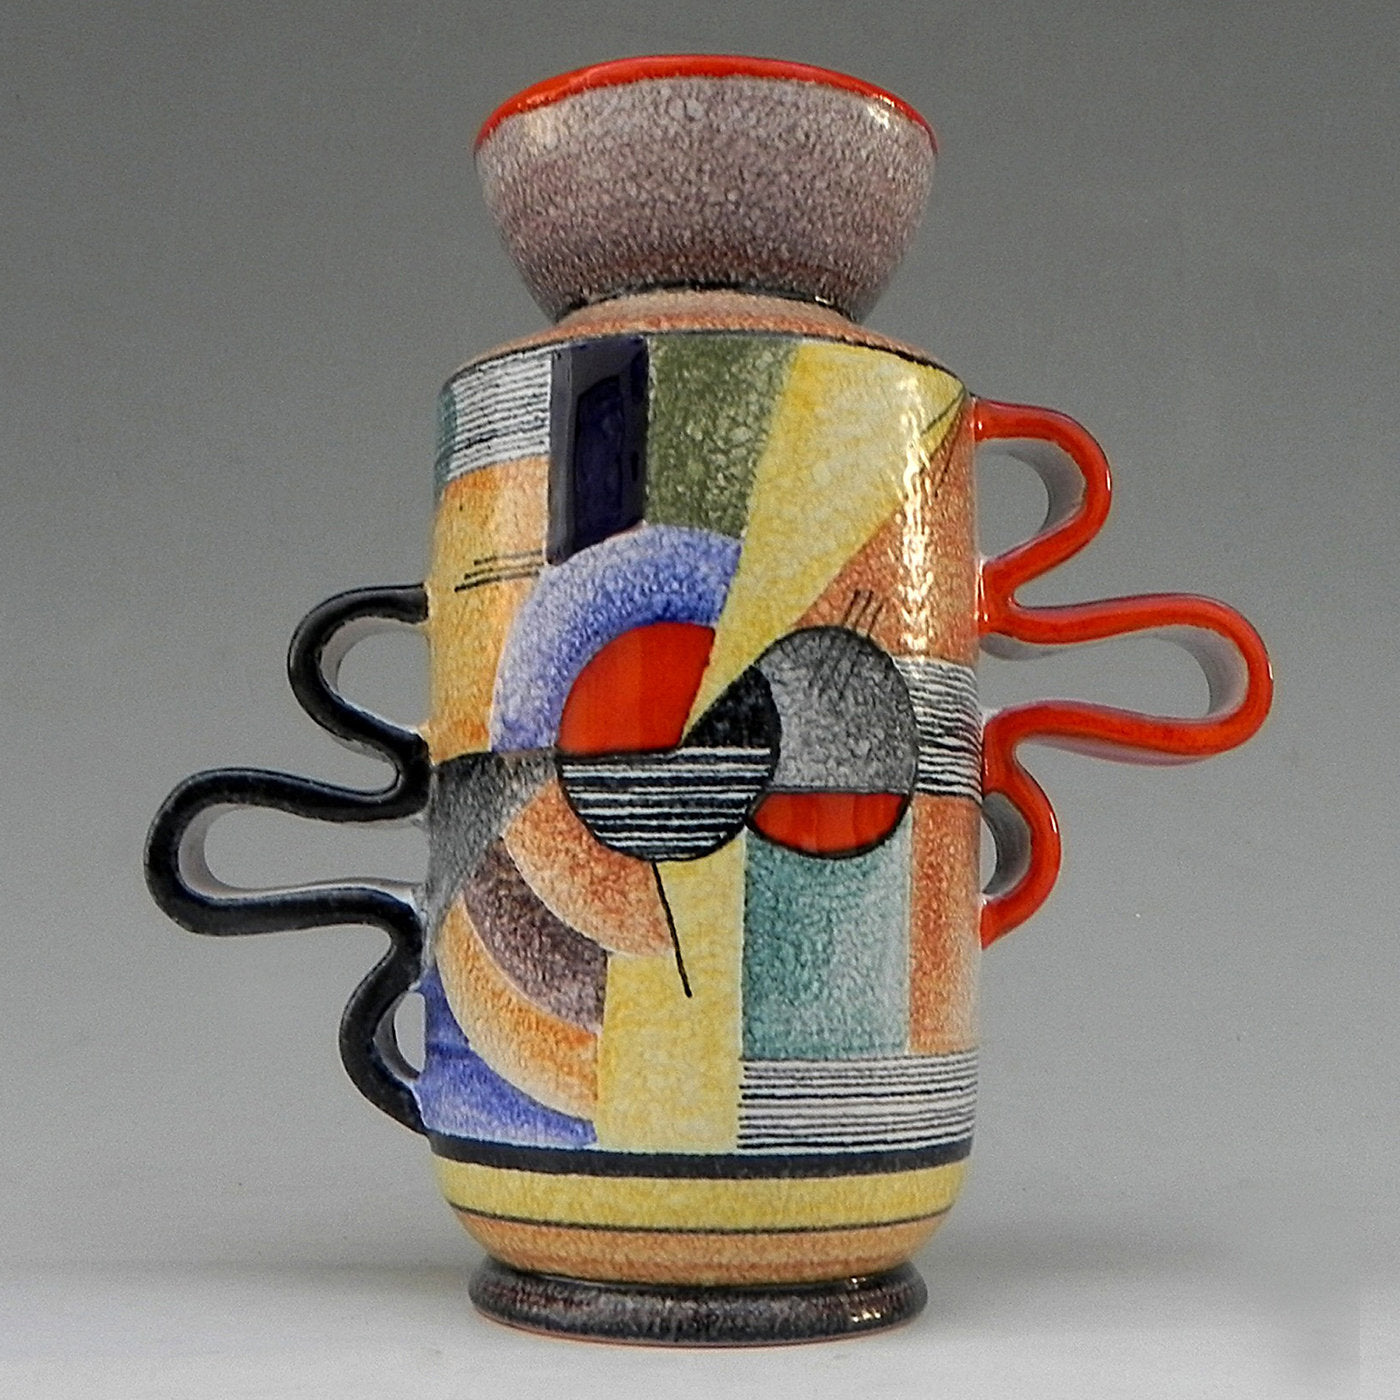 Snello Futurista Ceramic Vase - Alternative view 1